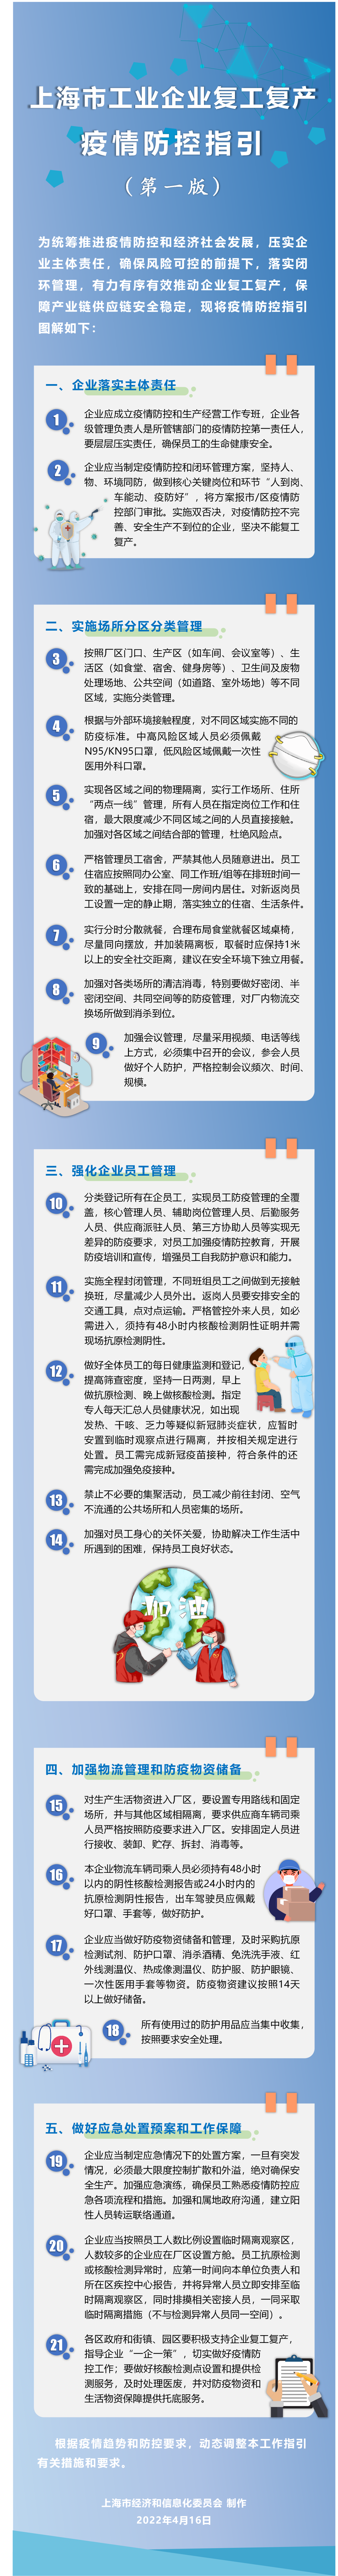 《上海市工业企业复工复产疫情防控指引（第一版）》图解.png